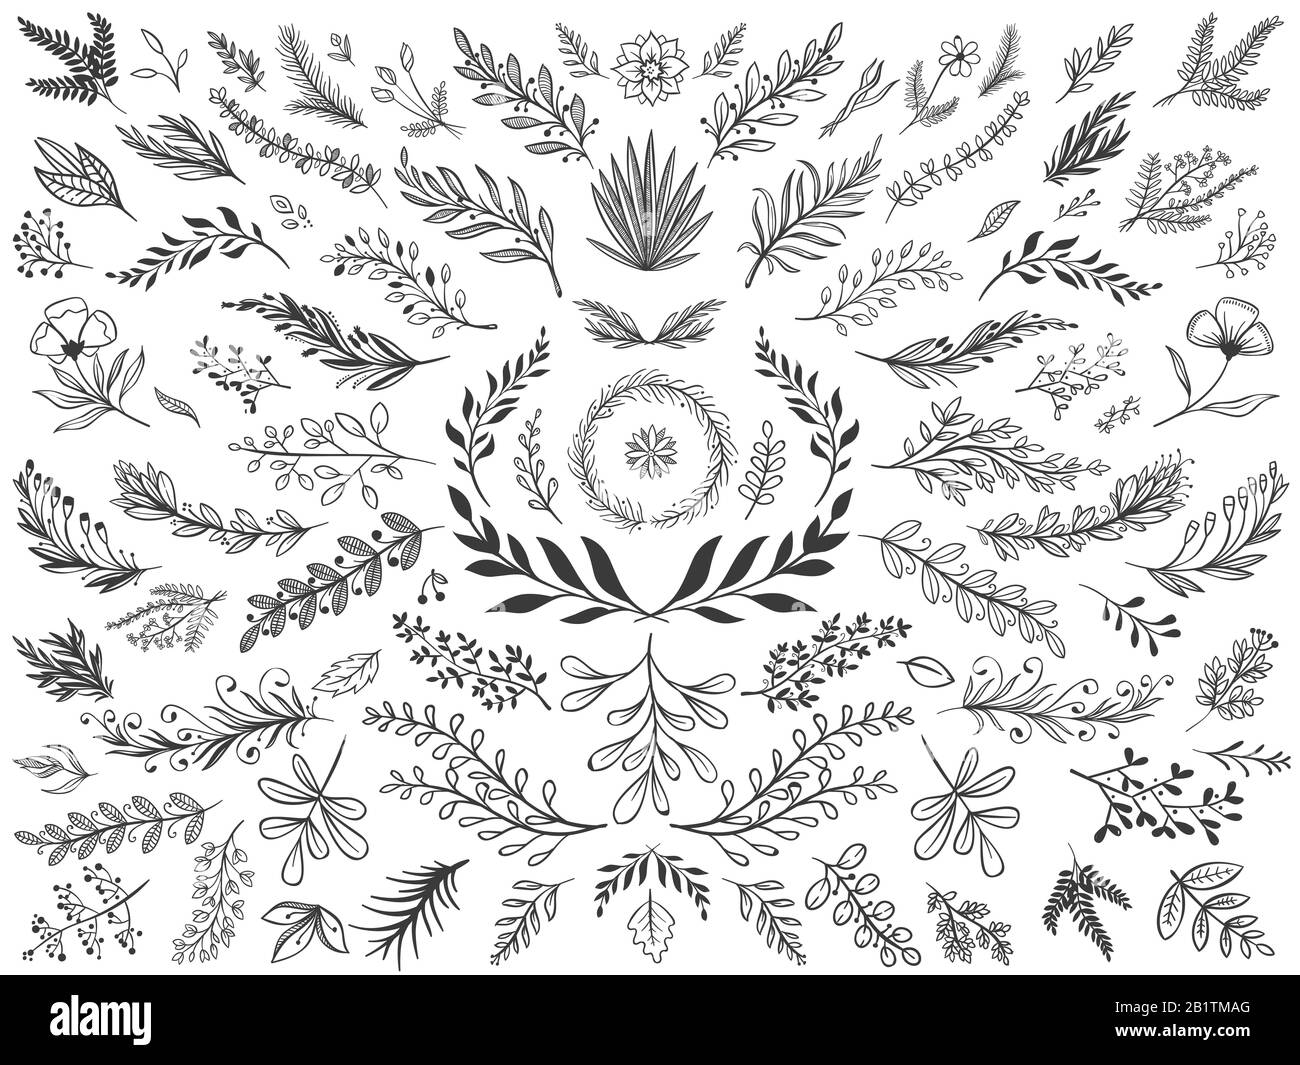 Handgezeichnete Blätter mit Blumendekor. Skizze Zierzweige, dekorative Blätter und Blumen Vektor-Illustration Set Stock Vektor